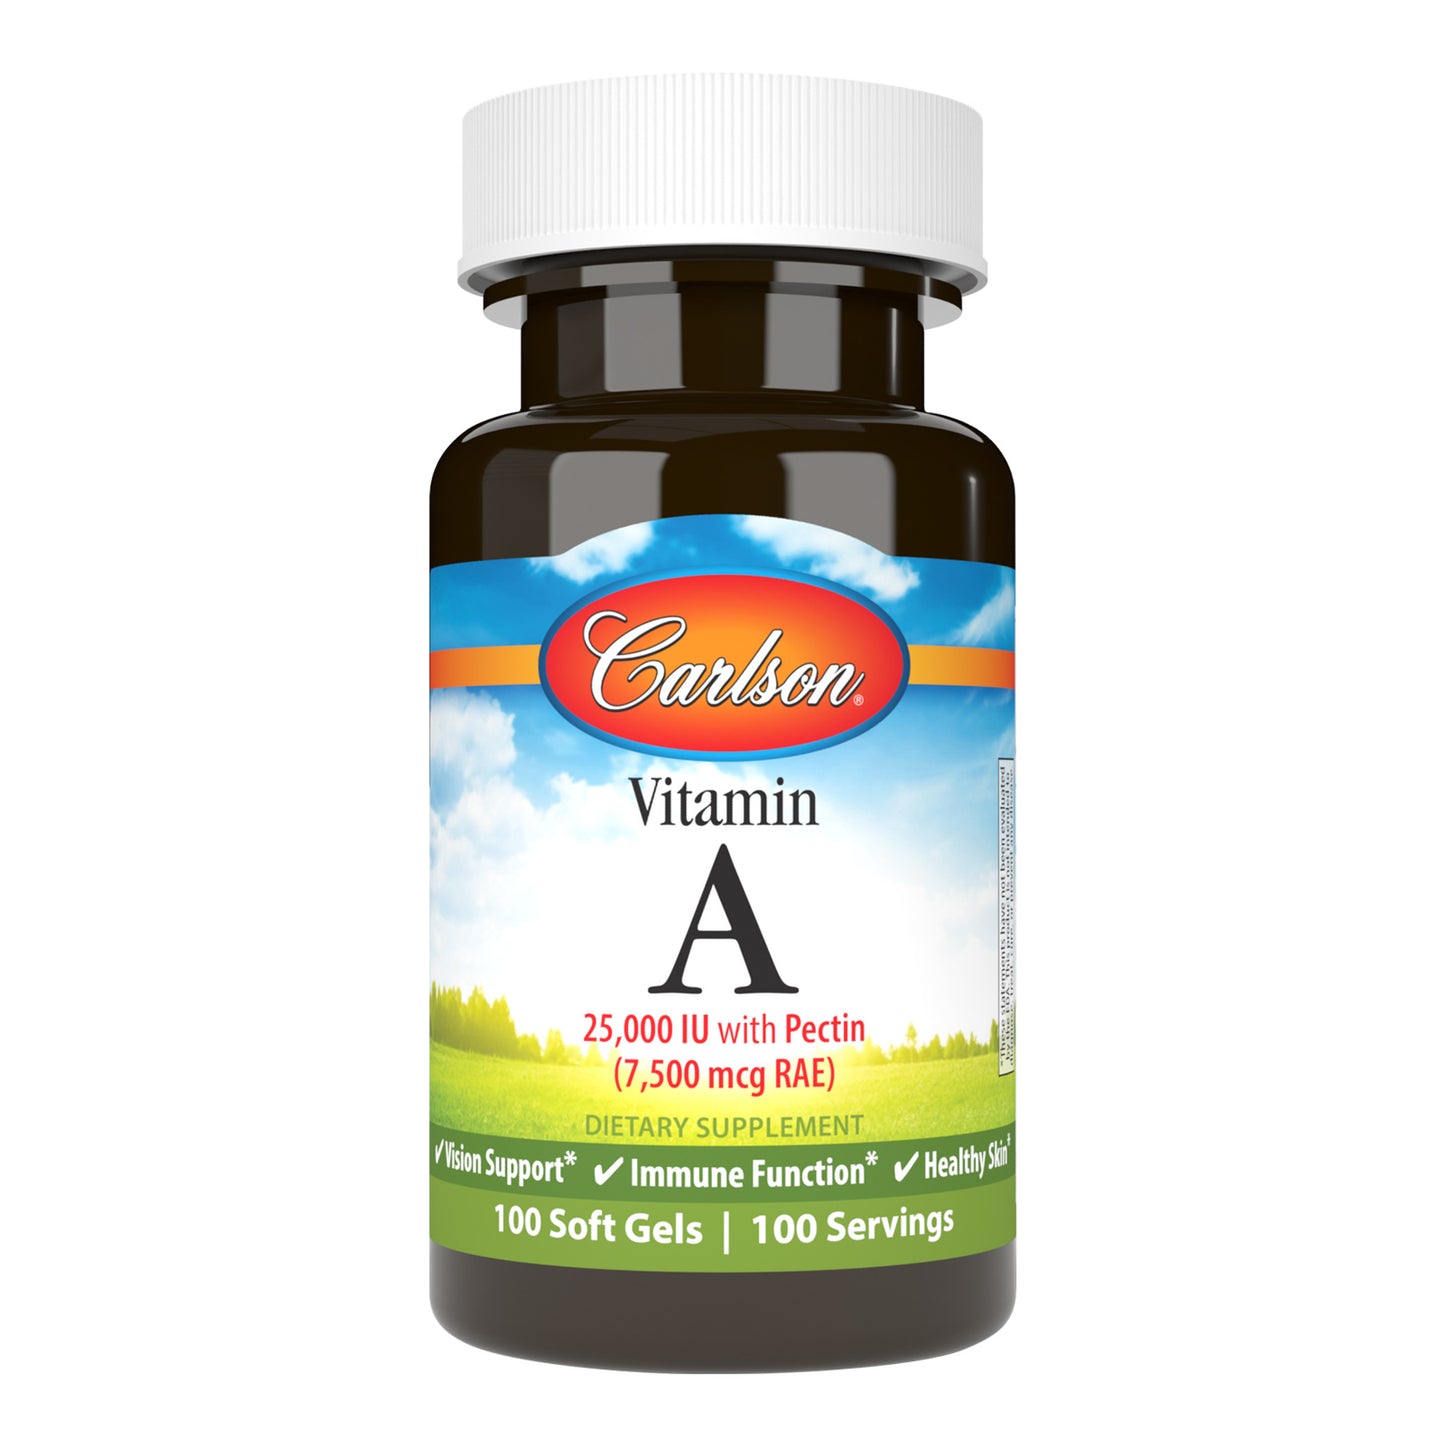 Carlson Vitamin A 25,0000 Ui With Pectin (7.500 mcg RAE) 100 Soft Gels